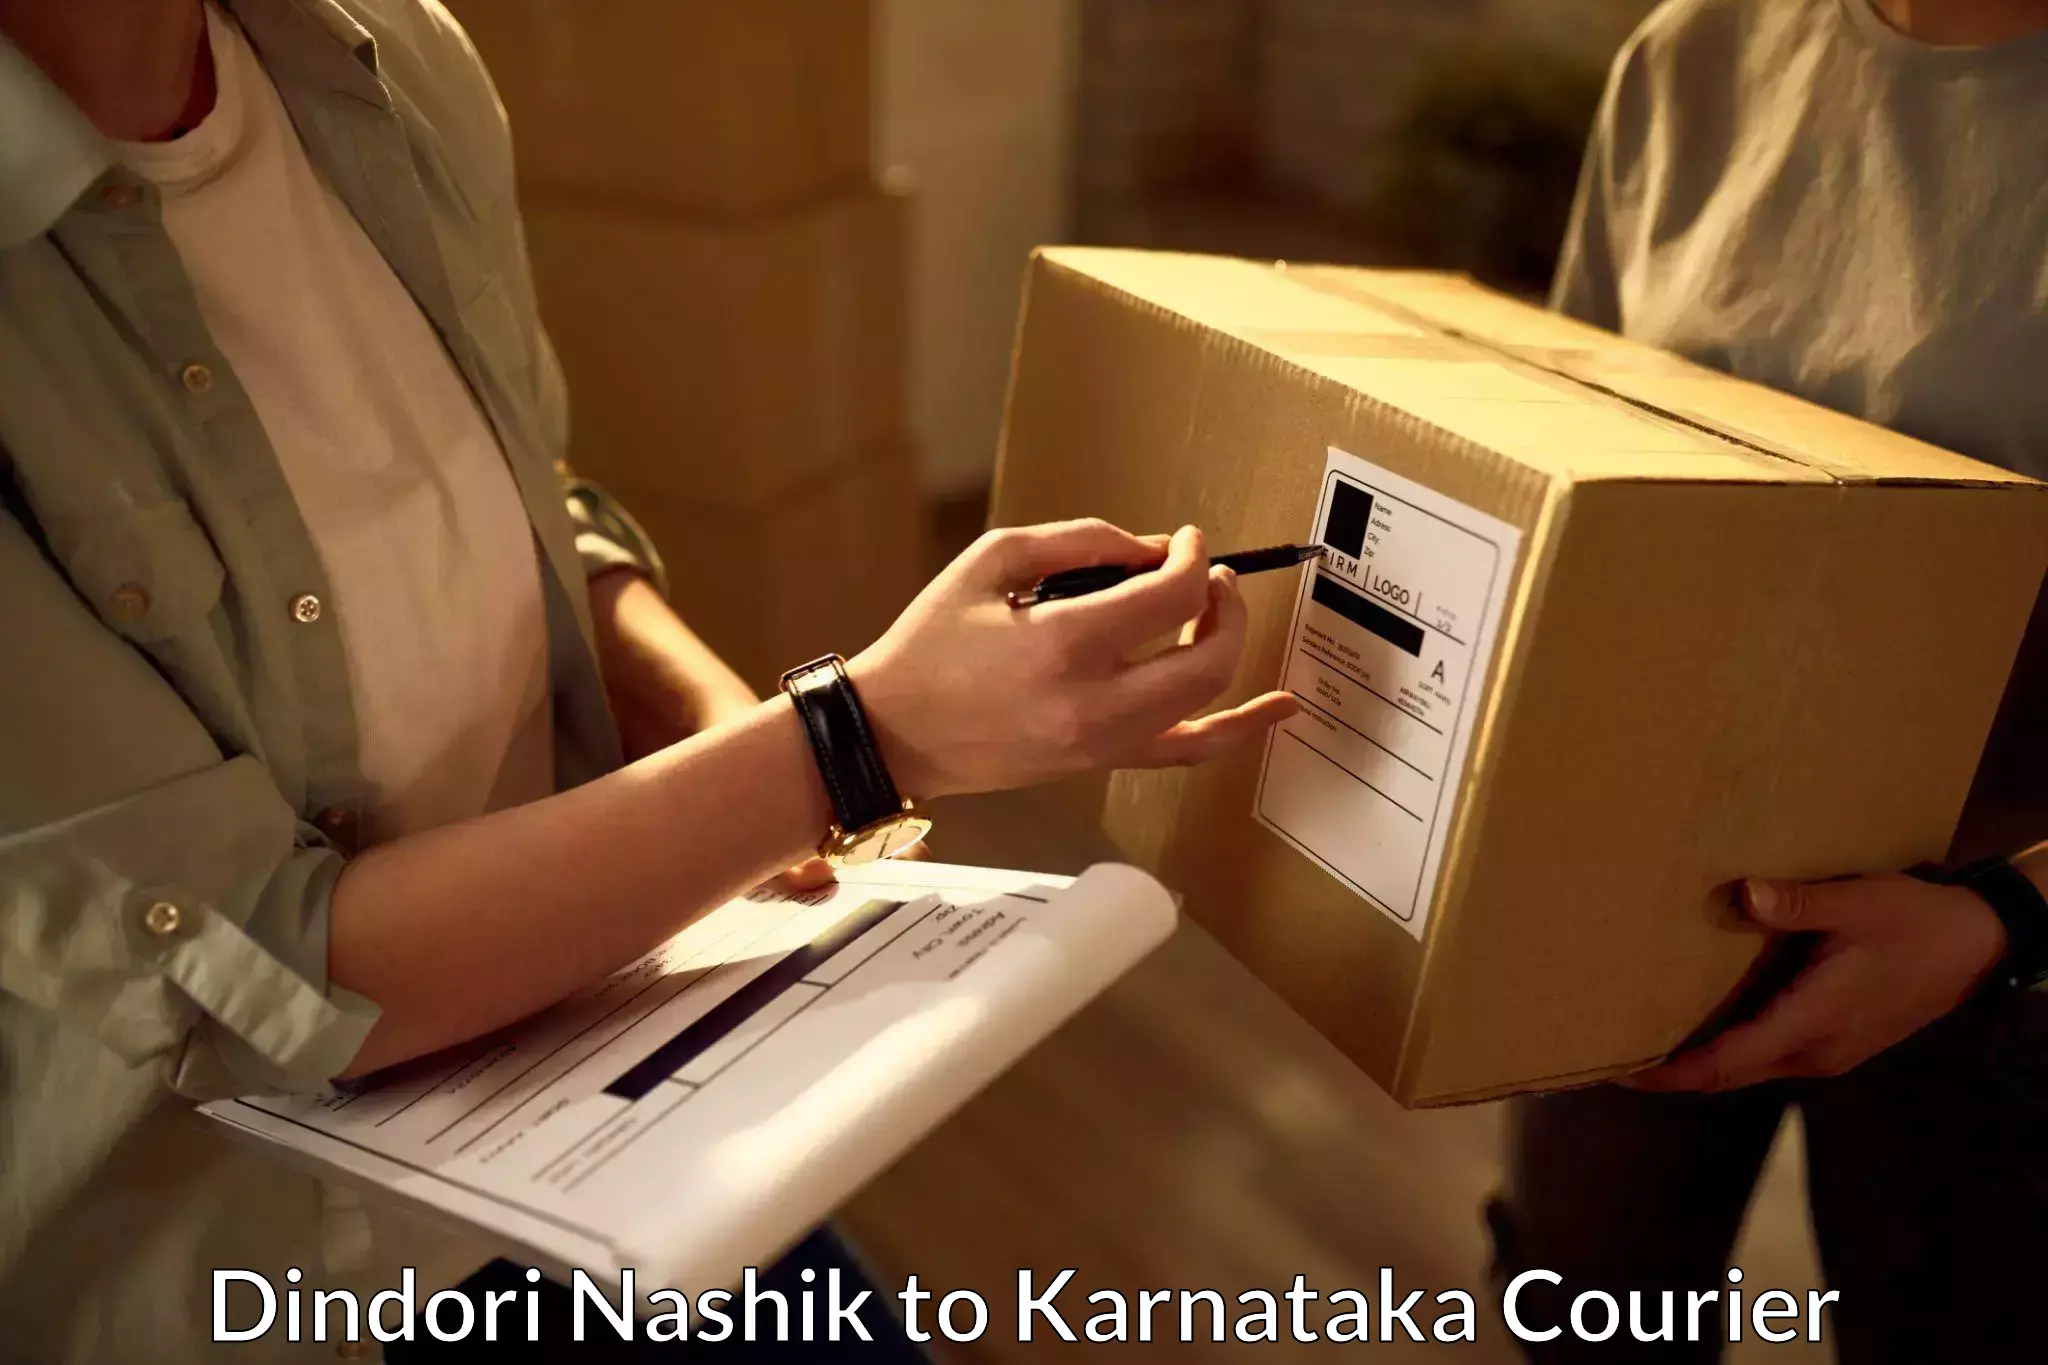 International parcel service Dindori Nashik to Karnataka